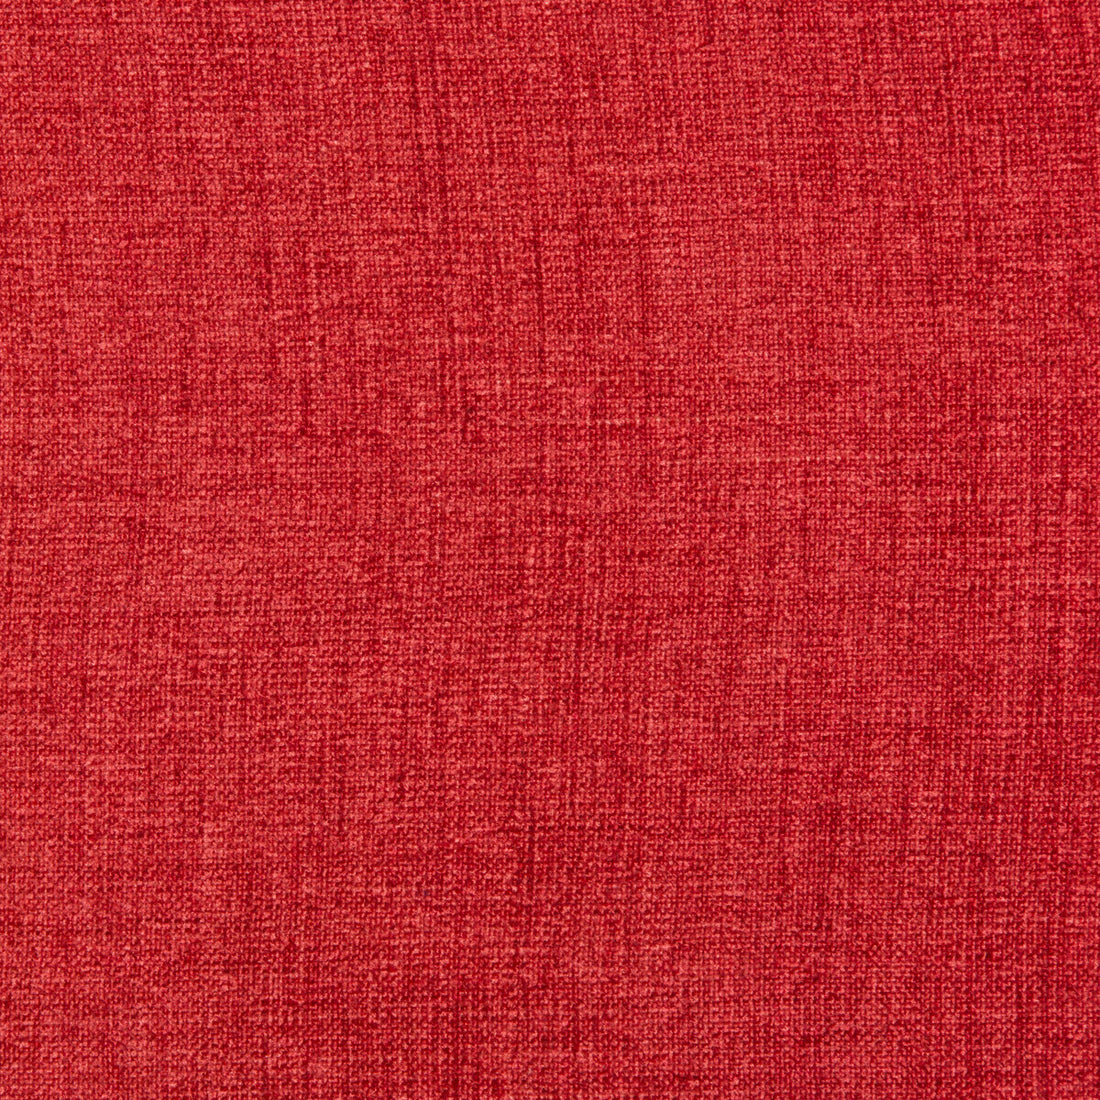 Kravet Basics fabric in 35775-97 color - pattern 35775.97.0 - by Kravet Basics